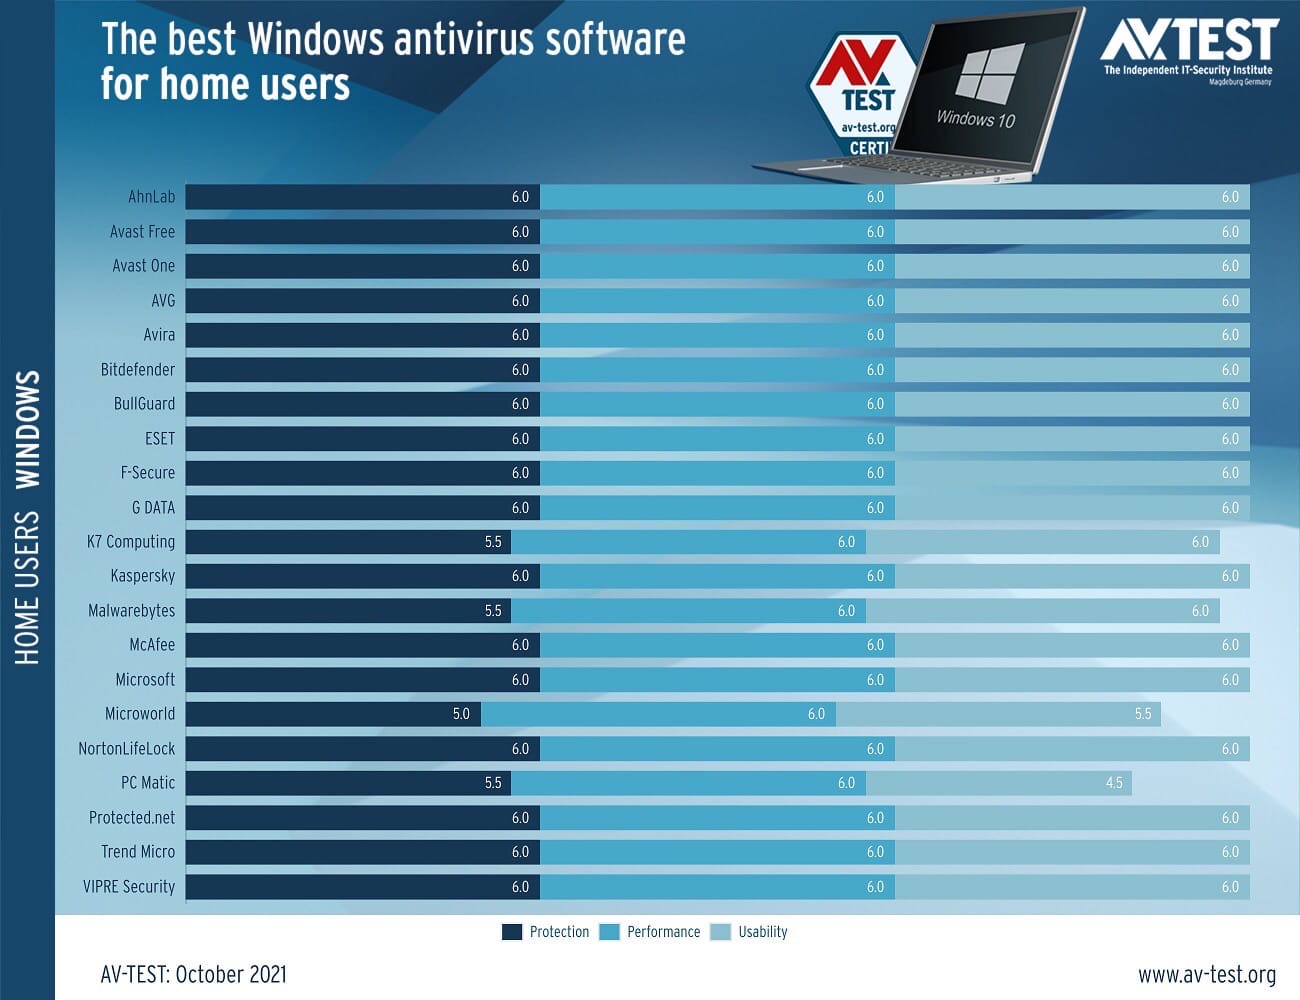 По мнению независимой организации AV-Test бесплатный штатный антивирус для Windows - Microsoft Defender признан одним из лучших, даже в сравнении с платными продуктами.